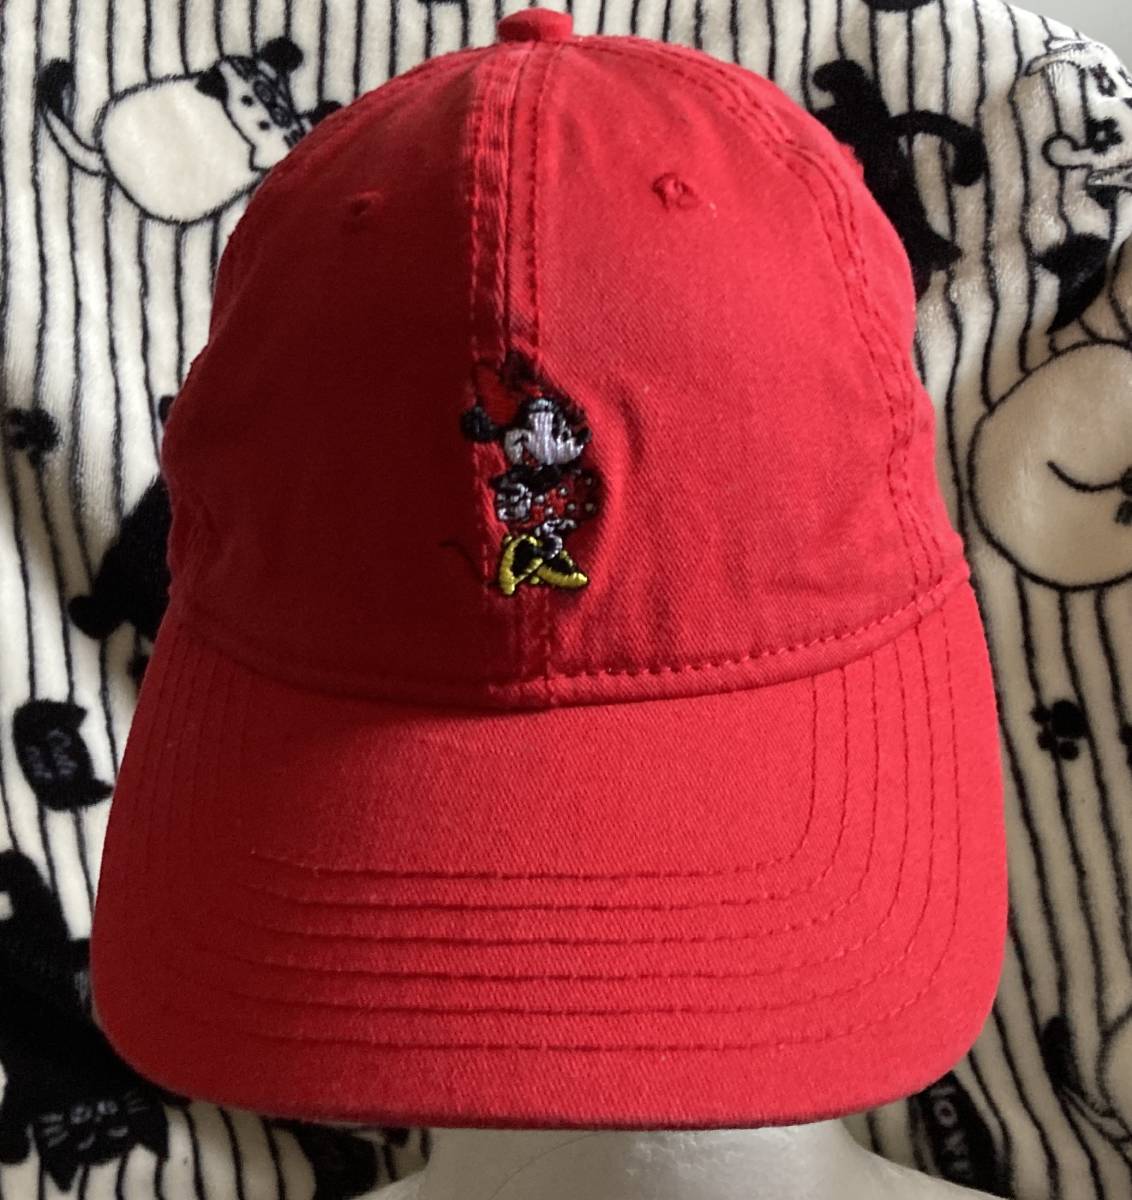 ジュニアお子様キッズ用フリーサイズ【ミニーマウス ／MINNIE MOUSE】ディズニー Disney かわいい赤色キャップ帽子CAP_画像1